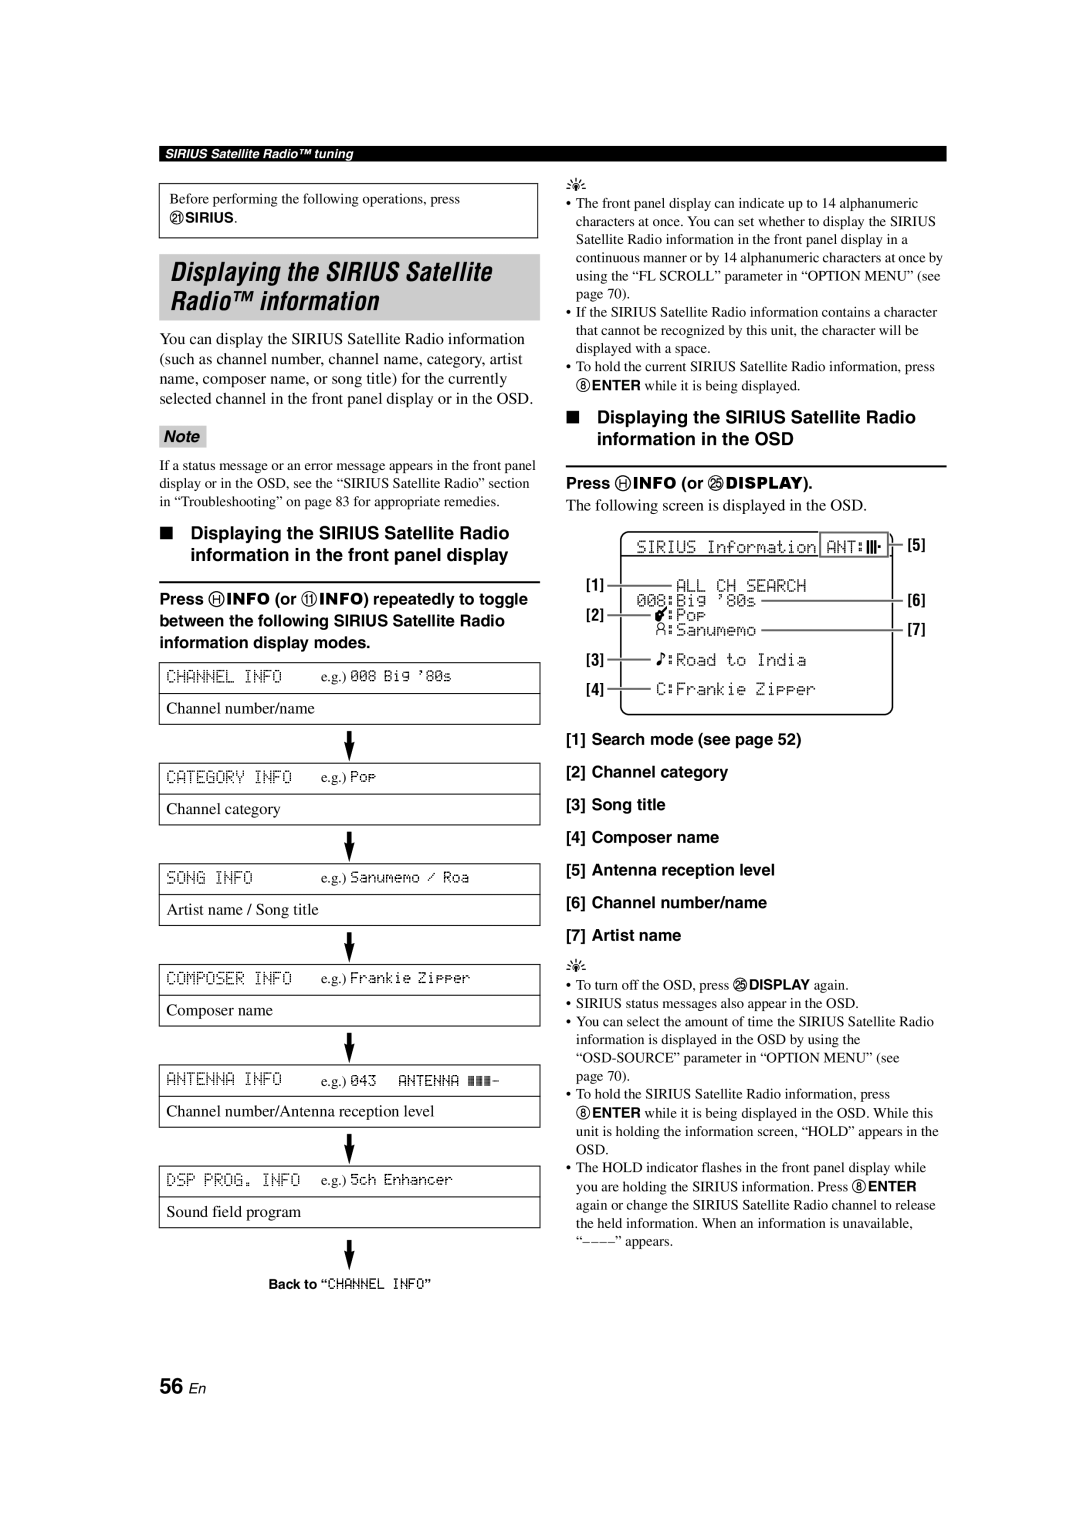 Yamaha HTR-6140 owner manual Displaying the SIRIUS Satellite Radio information, 56 En 